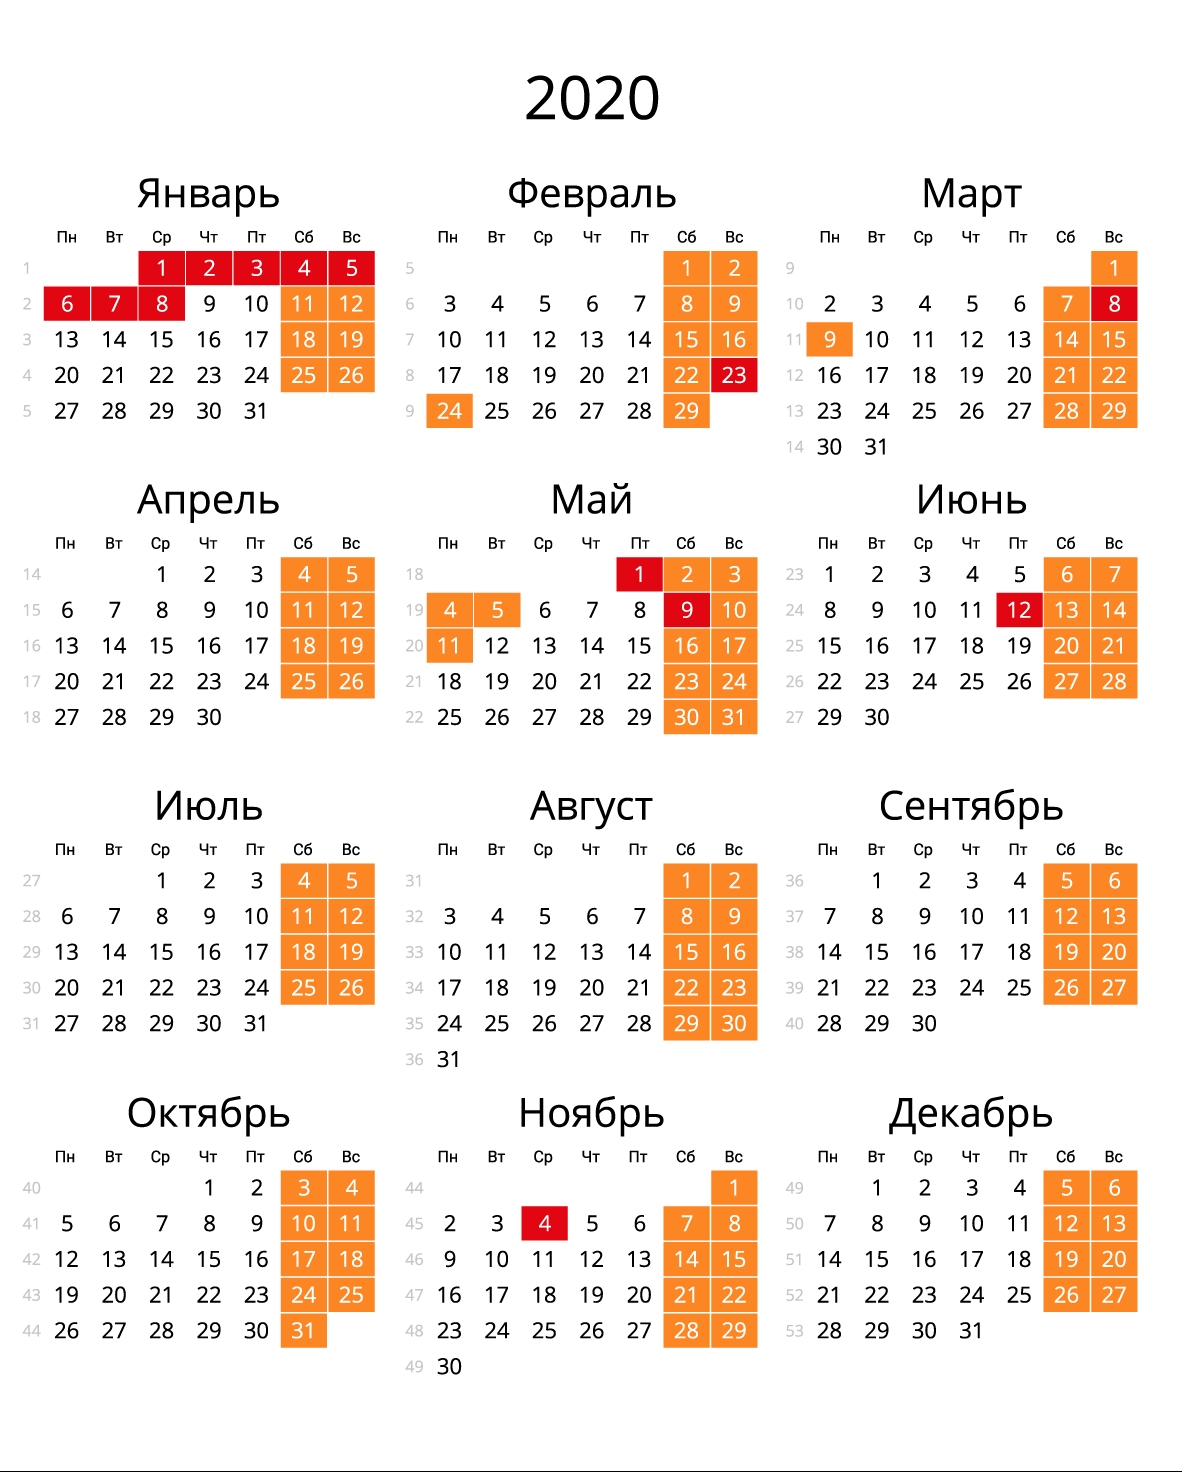 Скачать Календарь На 2020 Год В Форматах: Word, Pdf, Jpg